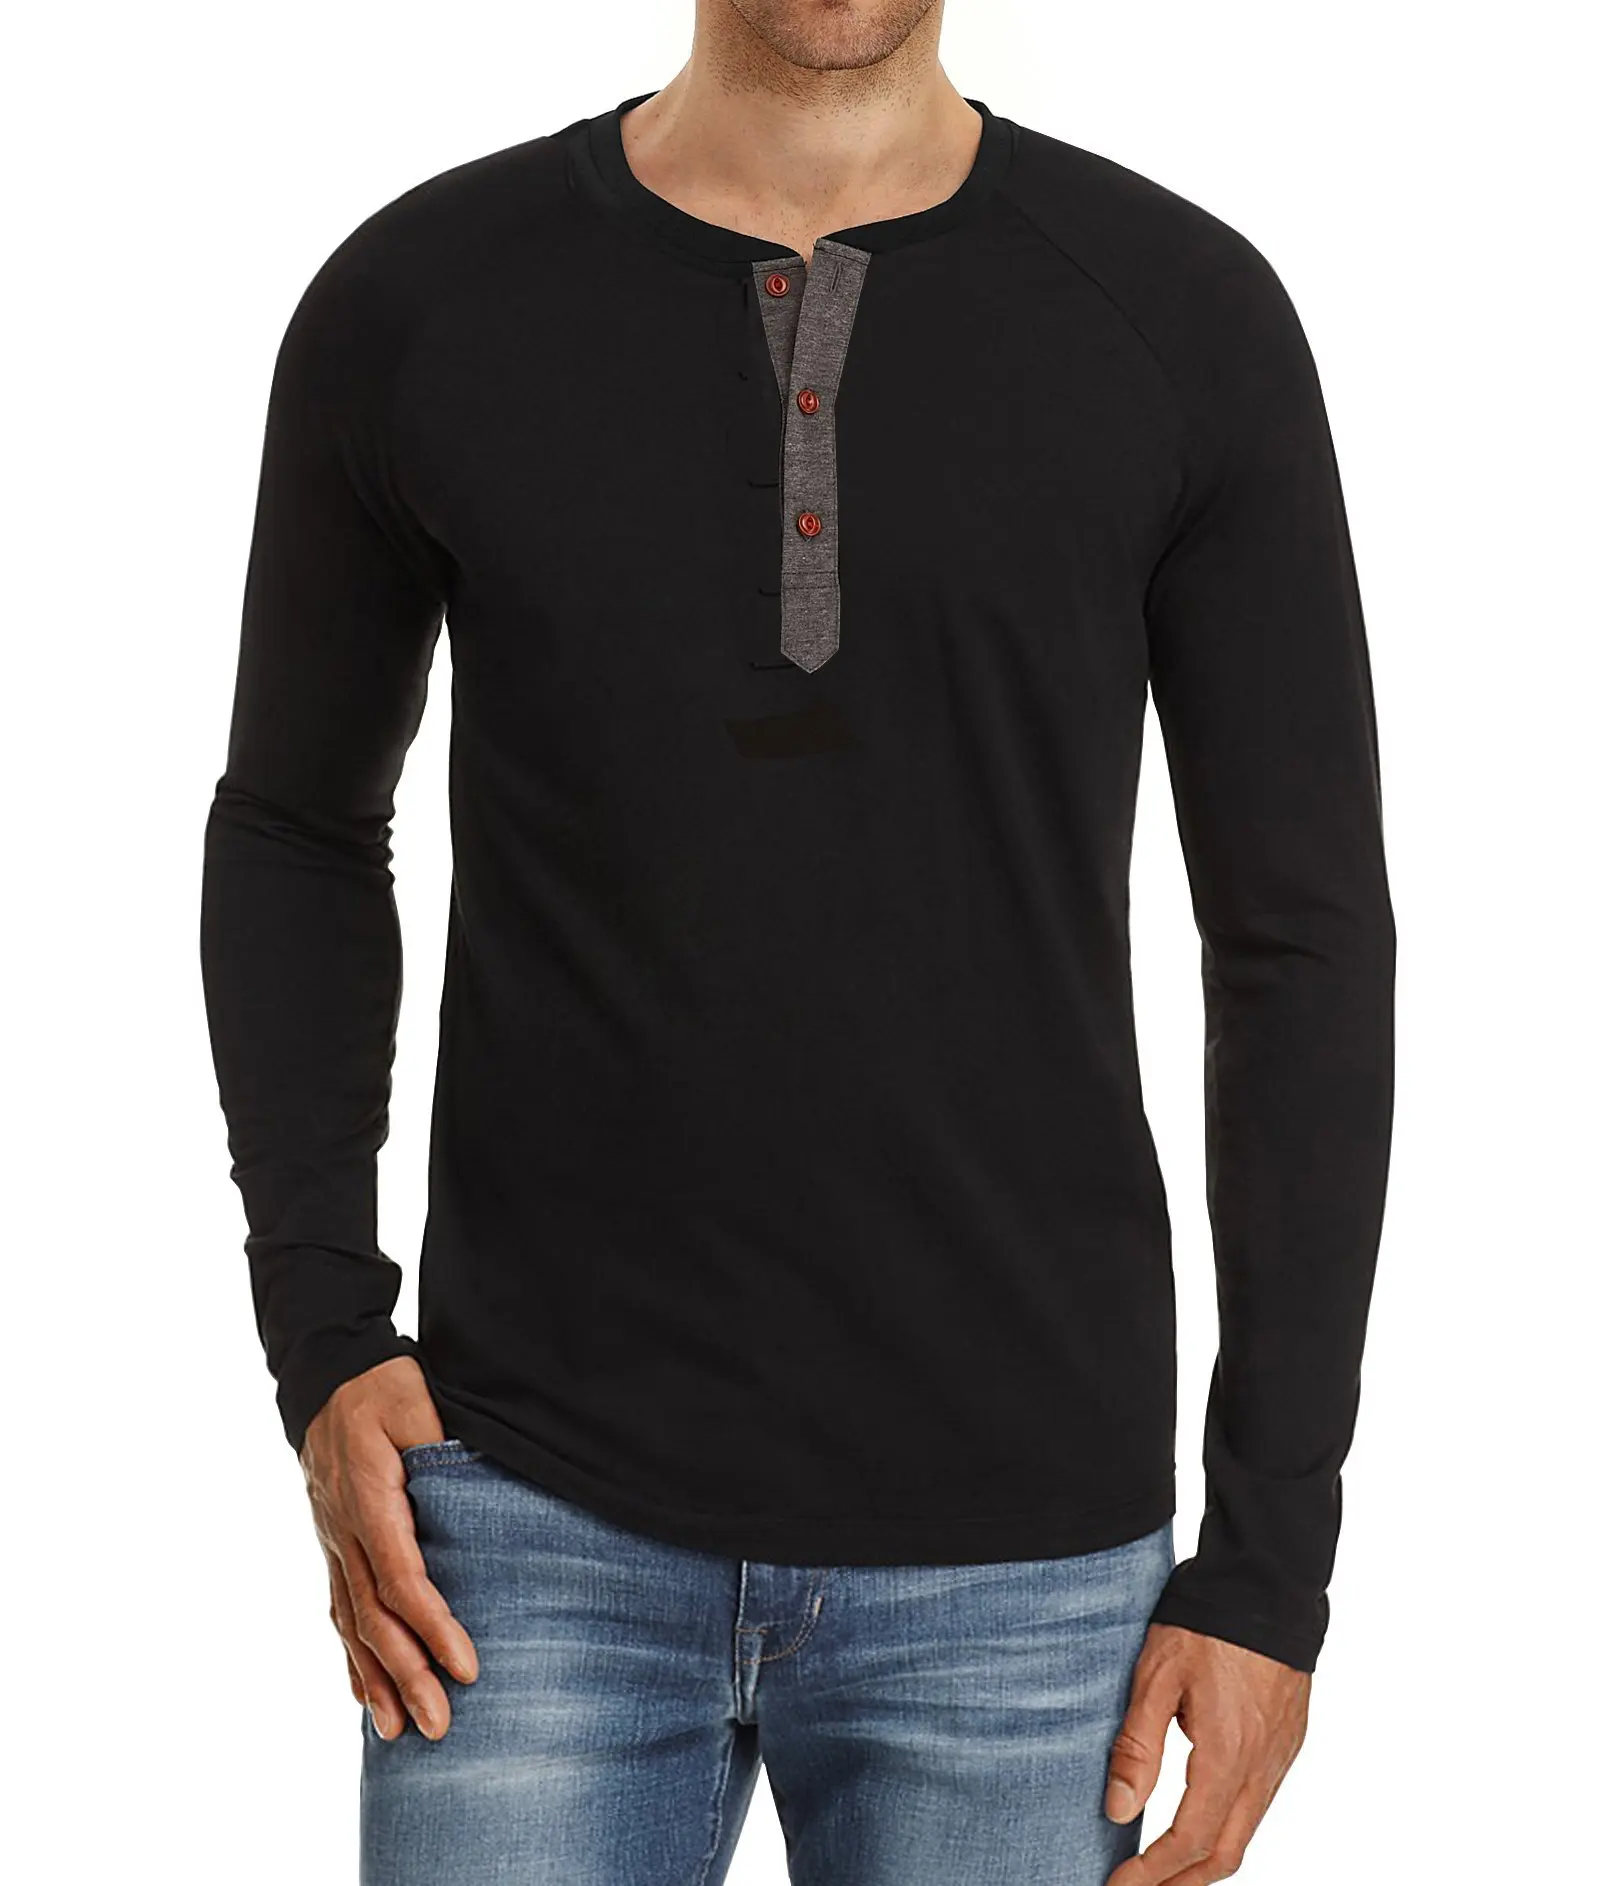 

GXF20 футболка с длинным рукавом воротник Генри рубашка для дна Мужской осенне-зимний топ большая мужская одежда